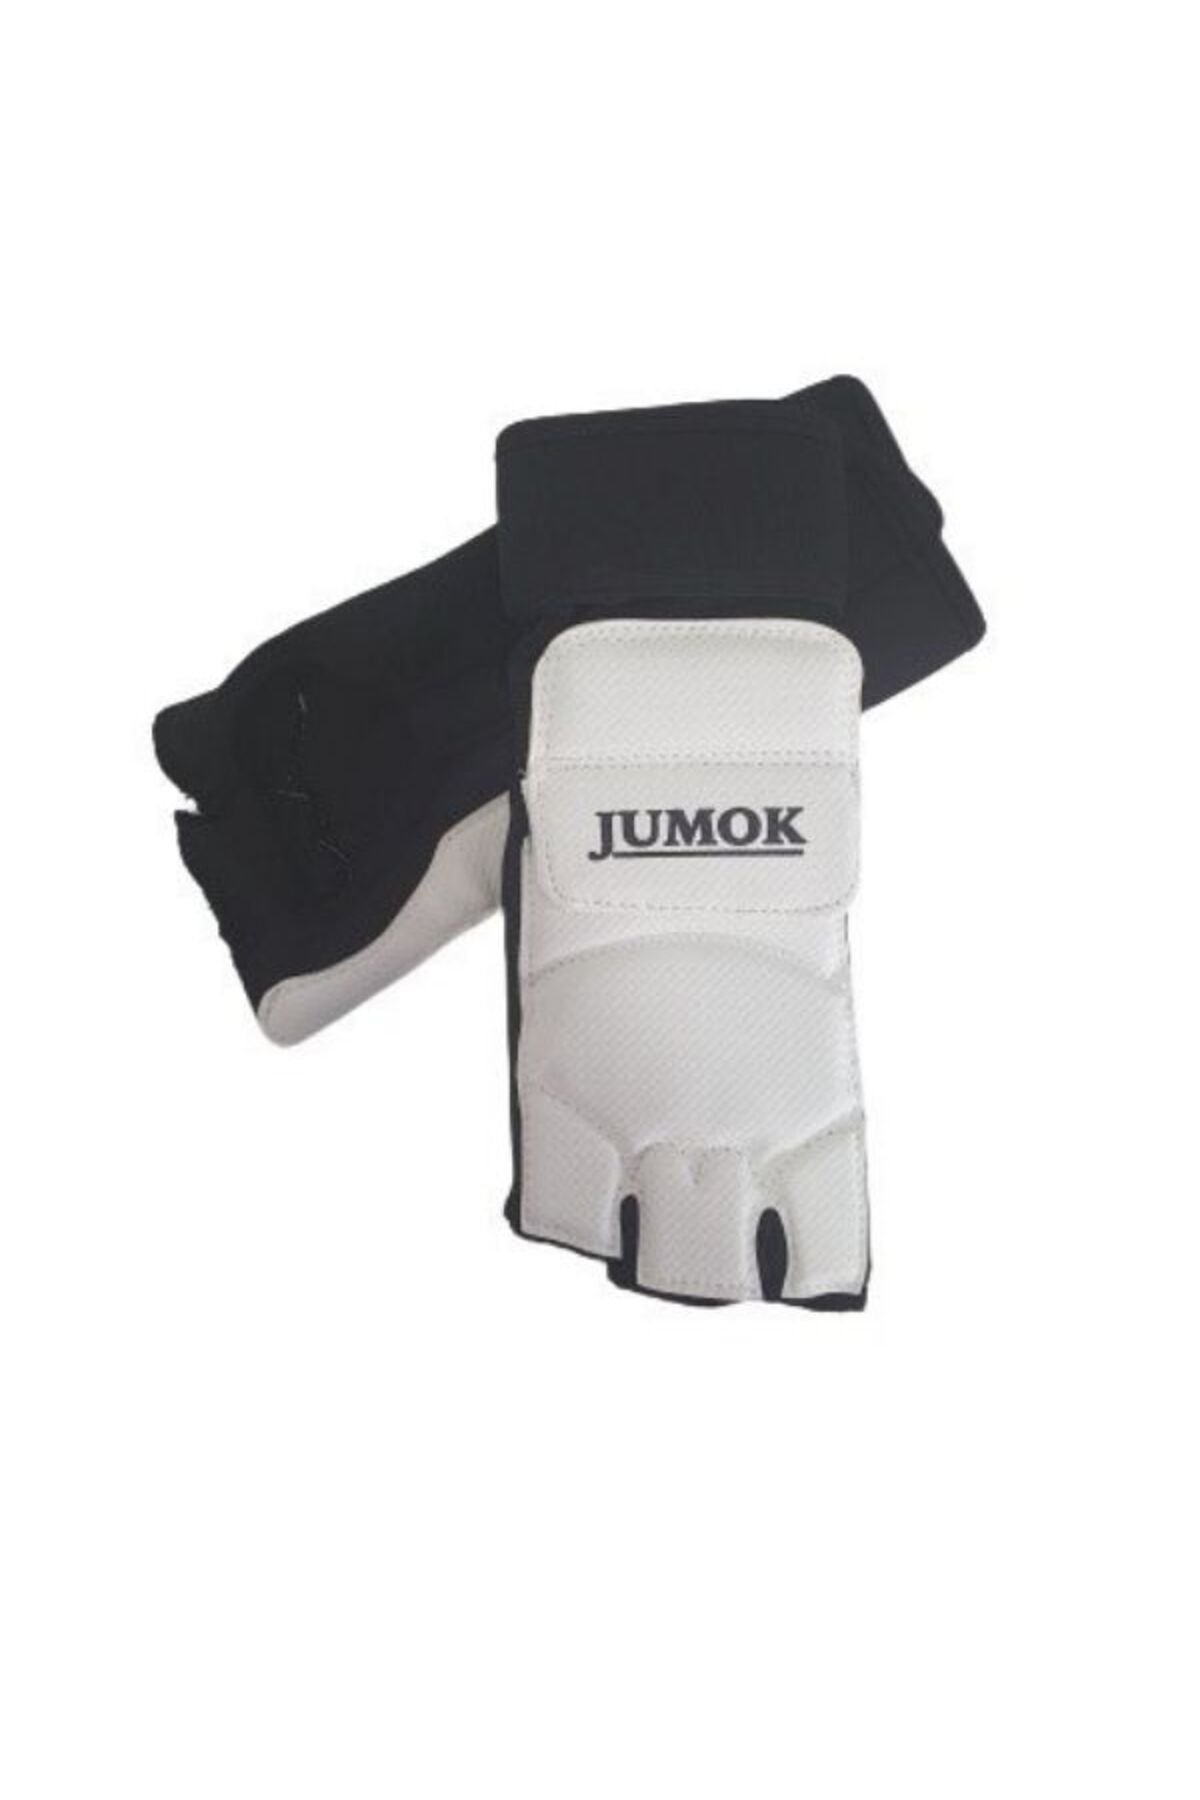 JUMOK Taekwondo 3 Parmak Ayaküstü Koruyucu-Tekvando Ayak Koruyucu